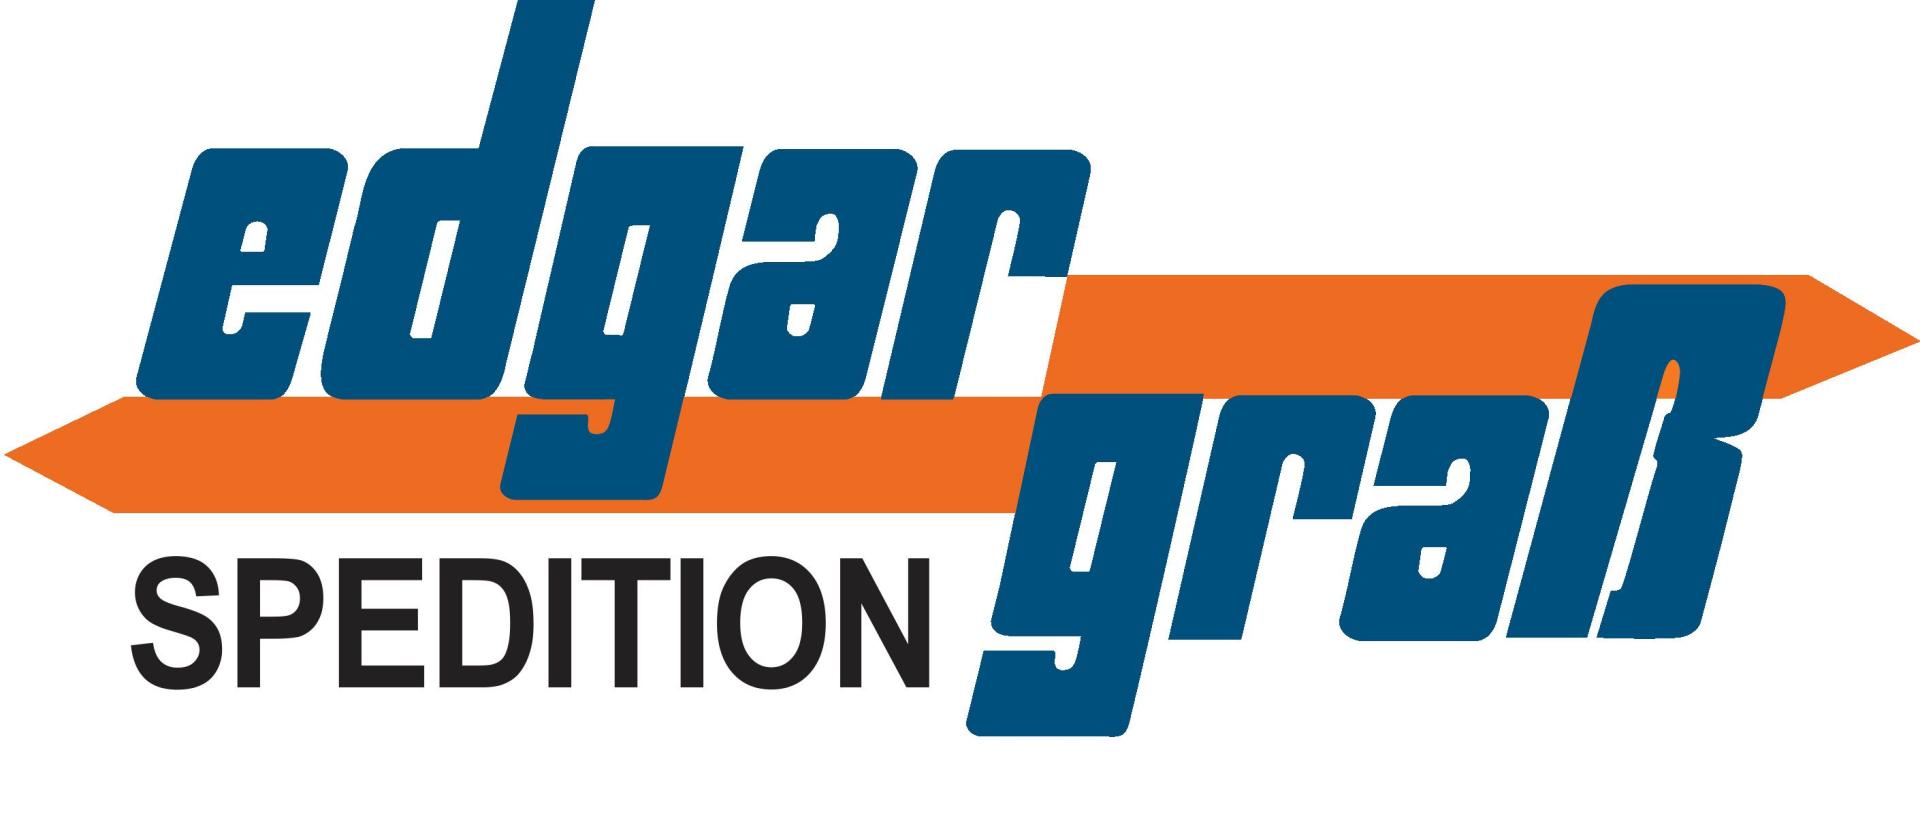 edgar-grass-logo